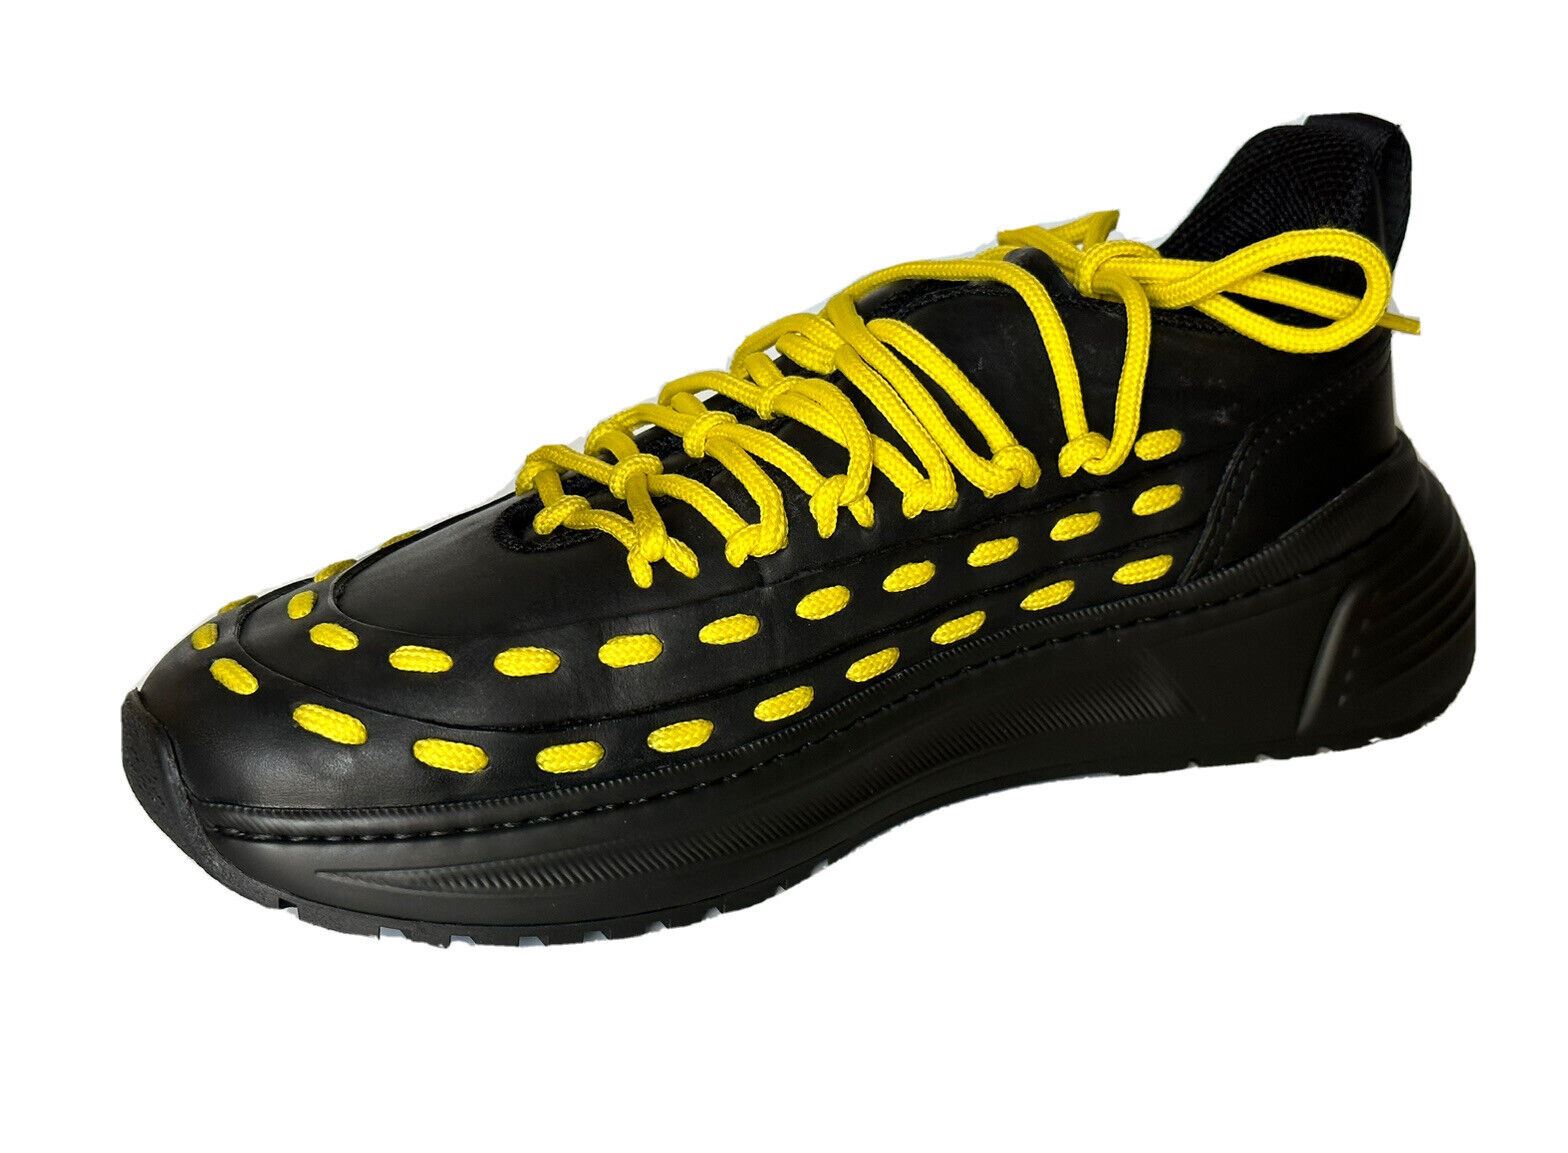 NIB 950 $ Bottega Veneta Herren-Sneaker aus Leder in Schwarz/Gelb 9 US (42) 578305 1013 